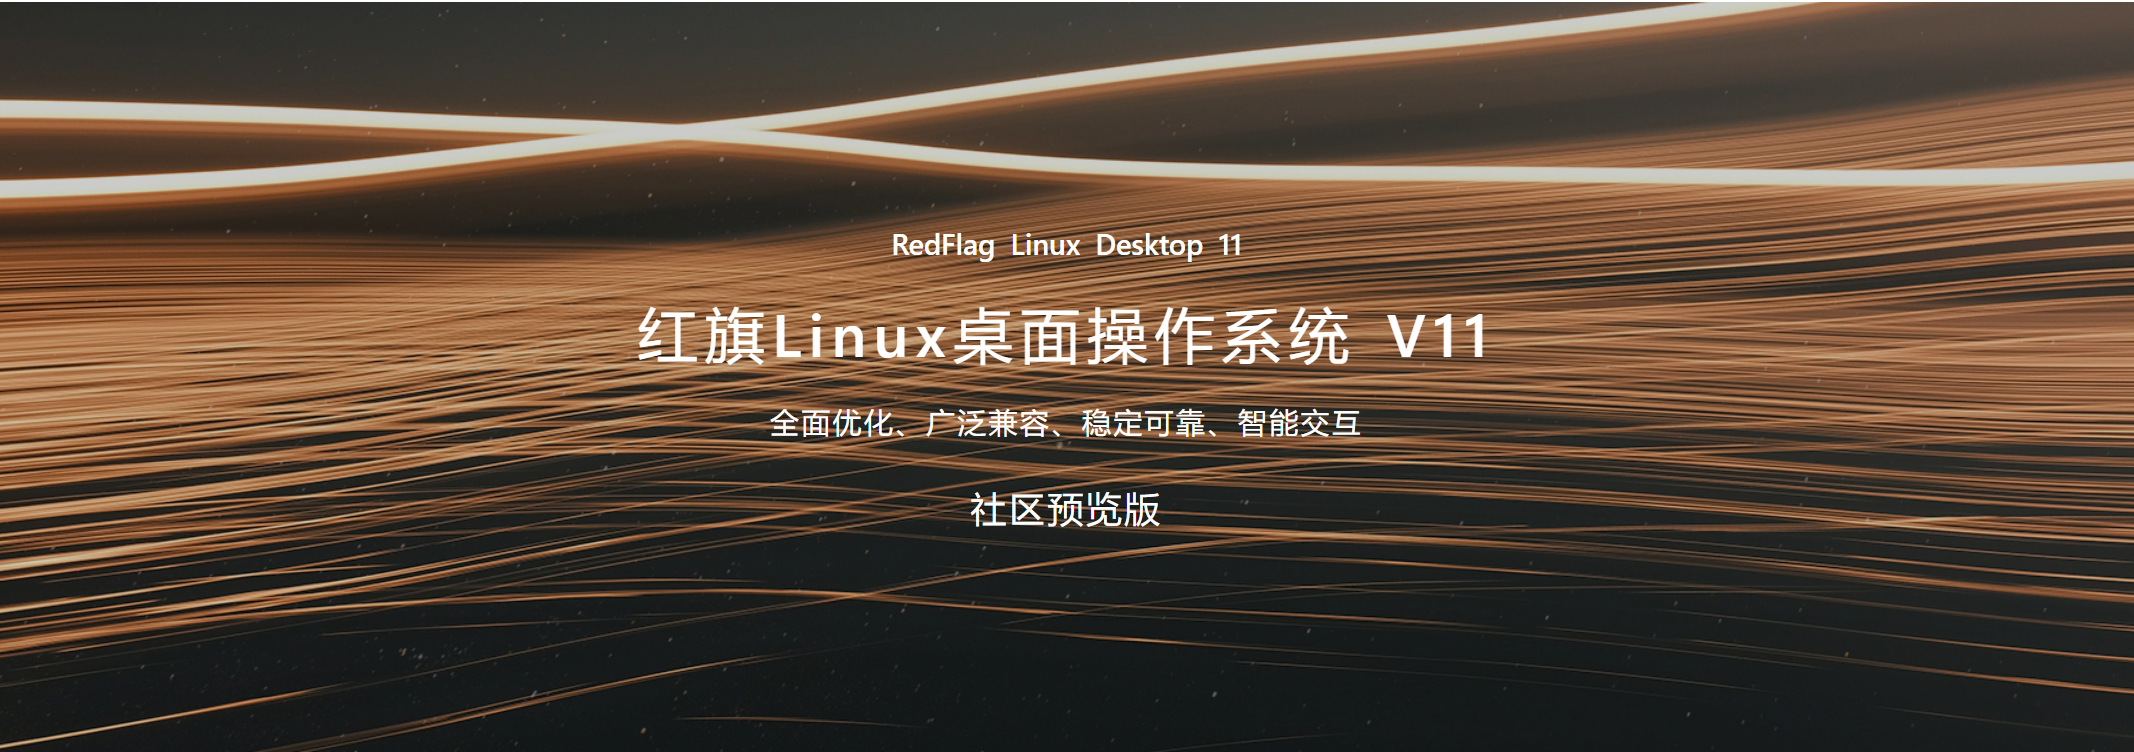 红旗linux桌面操作系统v11社区预览版开放下载